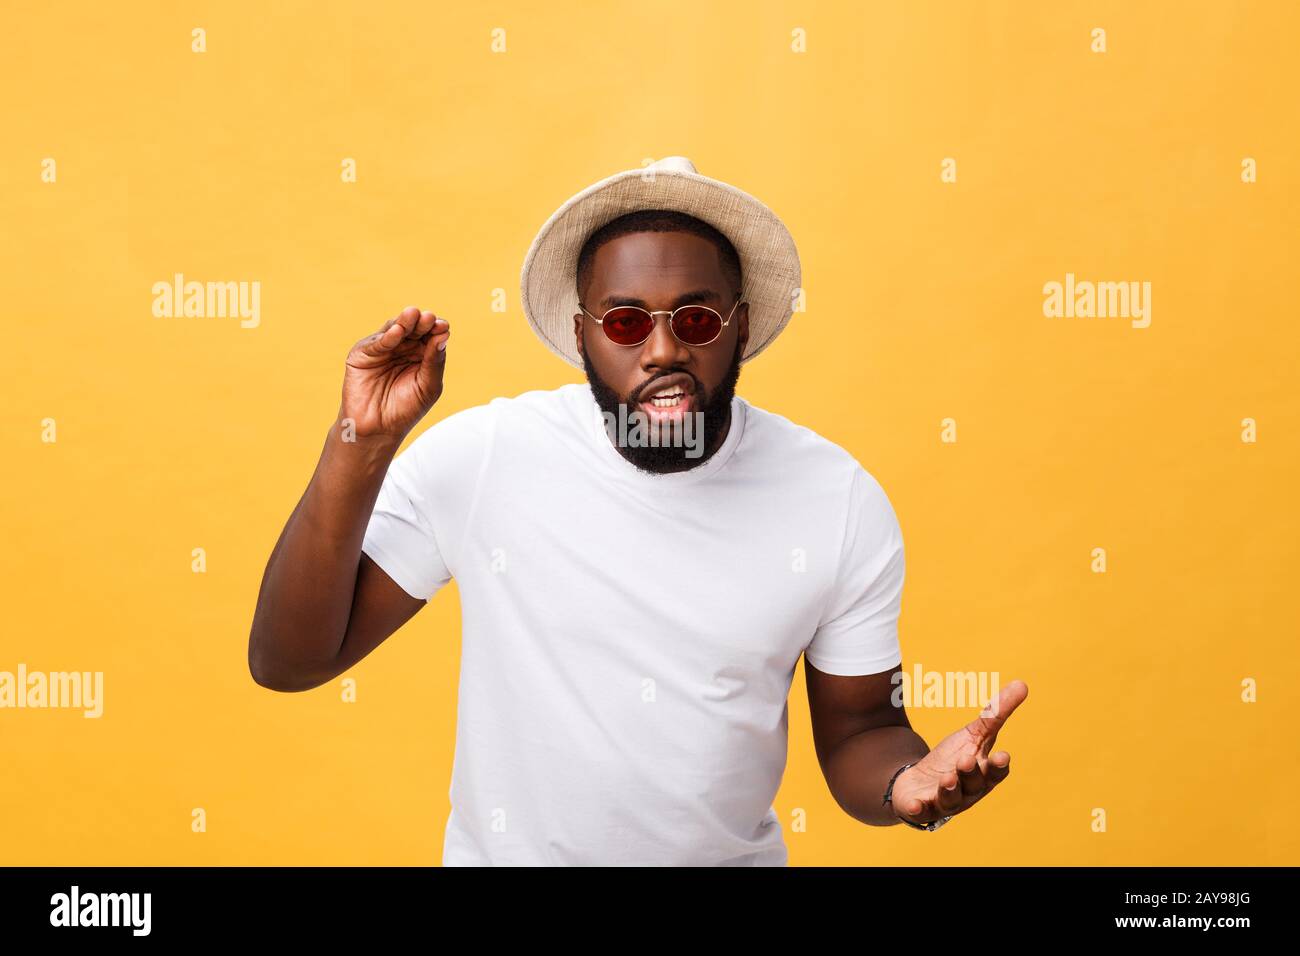 Junge afrikanische amerikanische Mann tragen weiße t-shirt schreien und schreien laut mit Hand auf Mund-zu-Seite. Kommunikationskonzept. Stockfoto